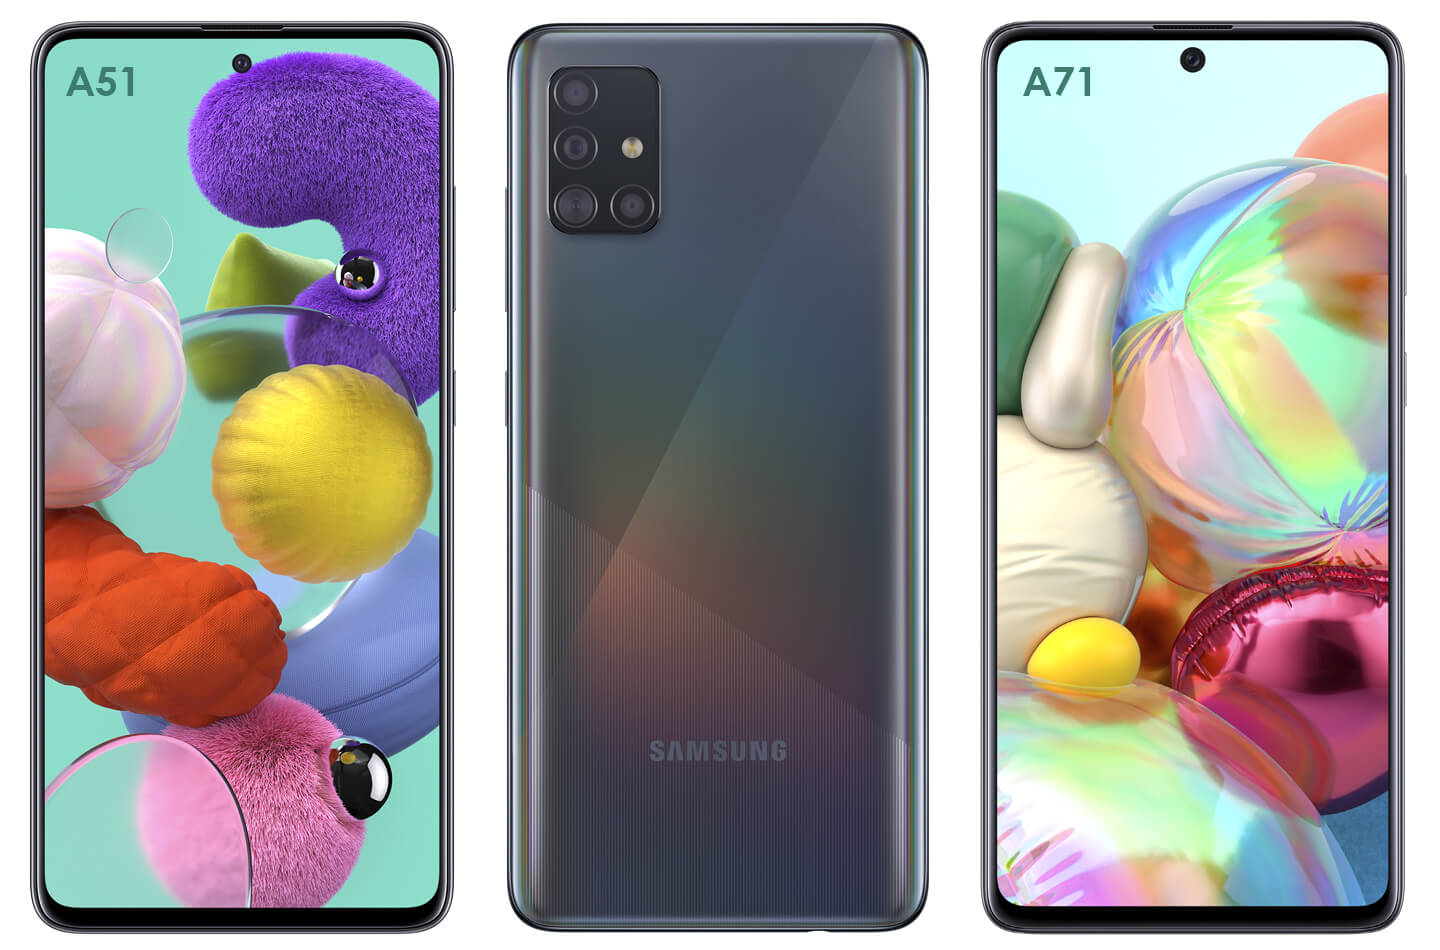 Samsung Galaxy of A71 kopen? Welke telefoon is het beste | LetsGoDigital